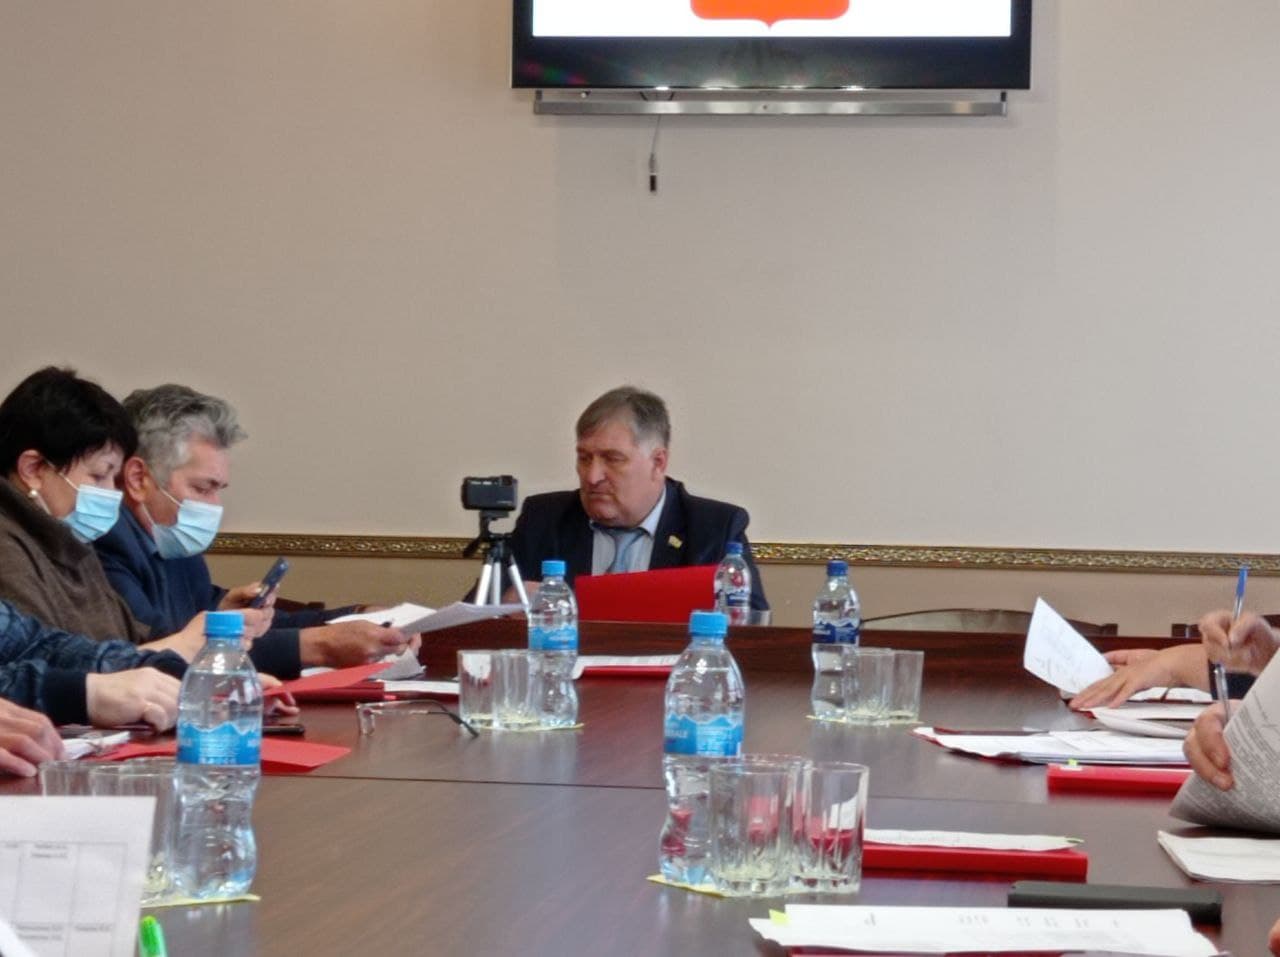 Полномочия Елены Балбековой как председателя Думы прекращены досрочно. Теперь официально